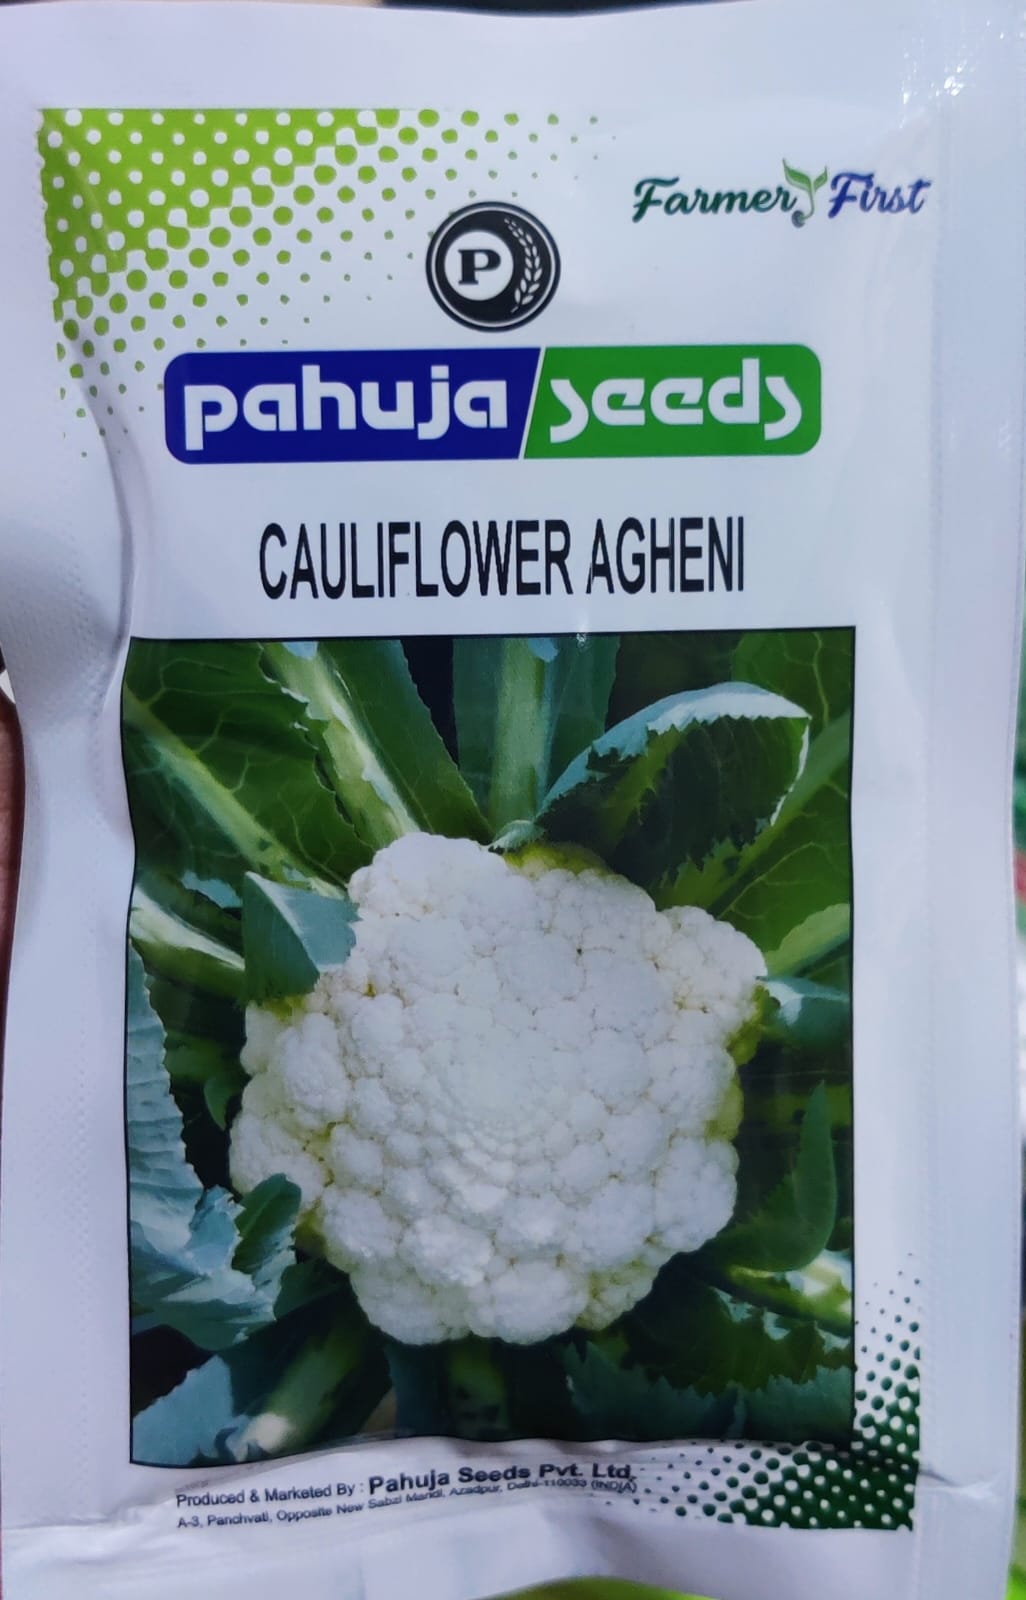 Cauliflower Agheni (Pahuja Seeds)